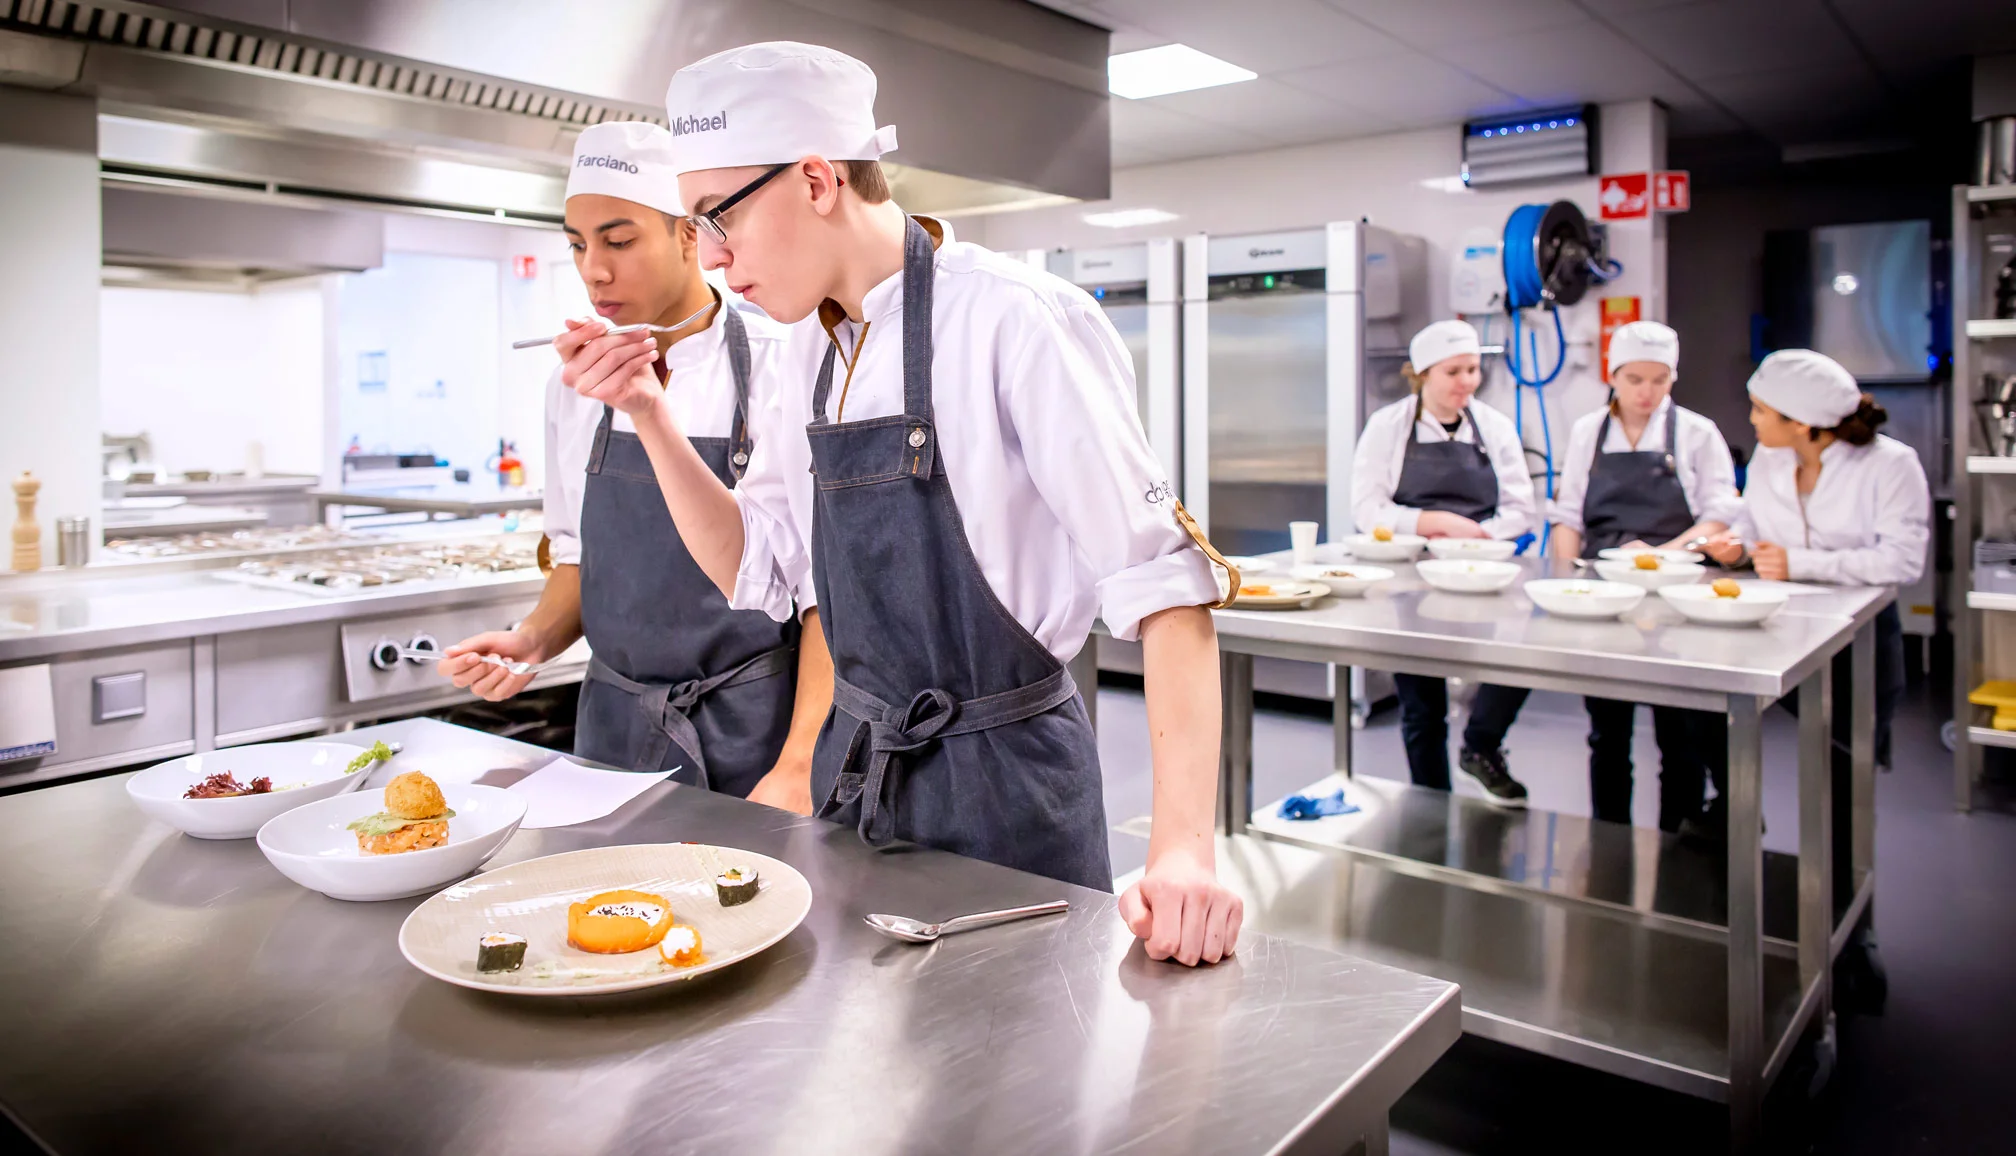 Studenten van de opleiding Gespecialiseerd kok krijgen praktijkles op school in Breda.